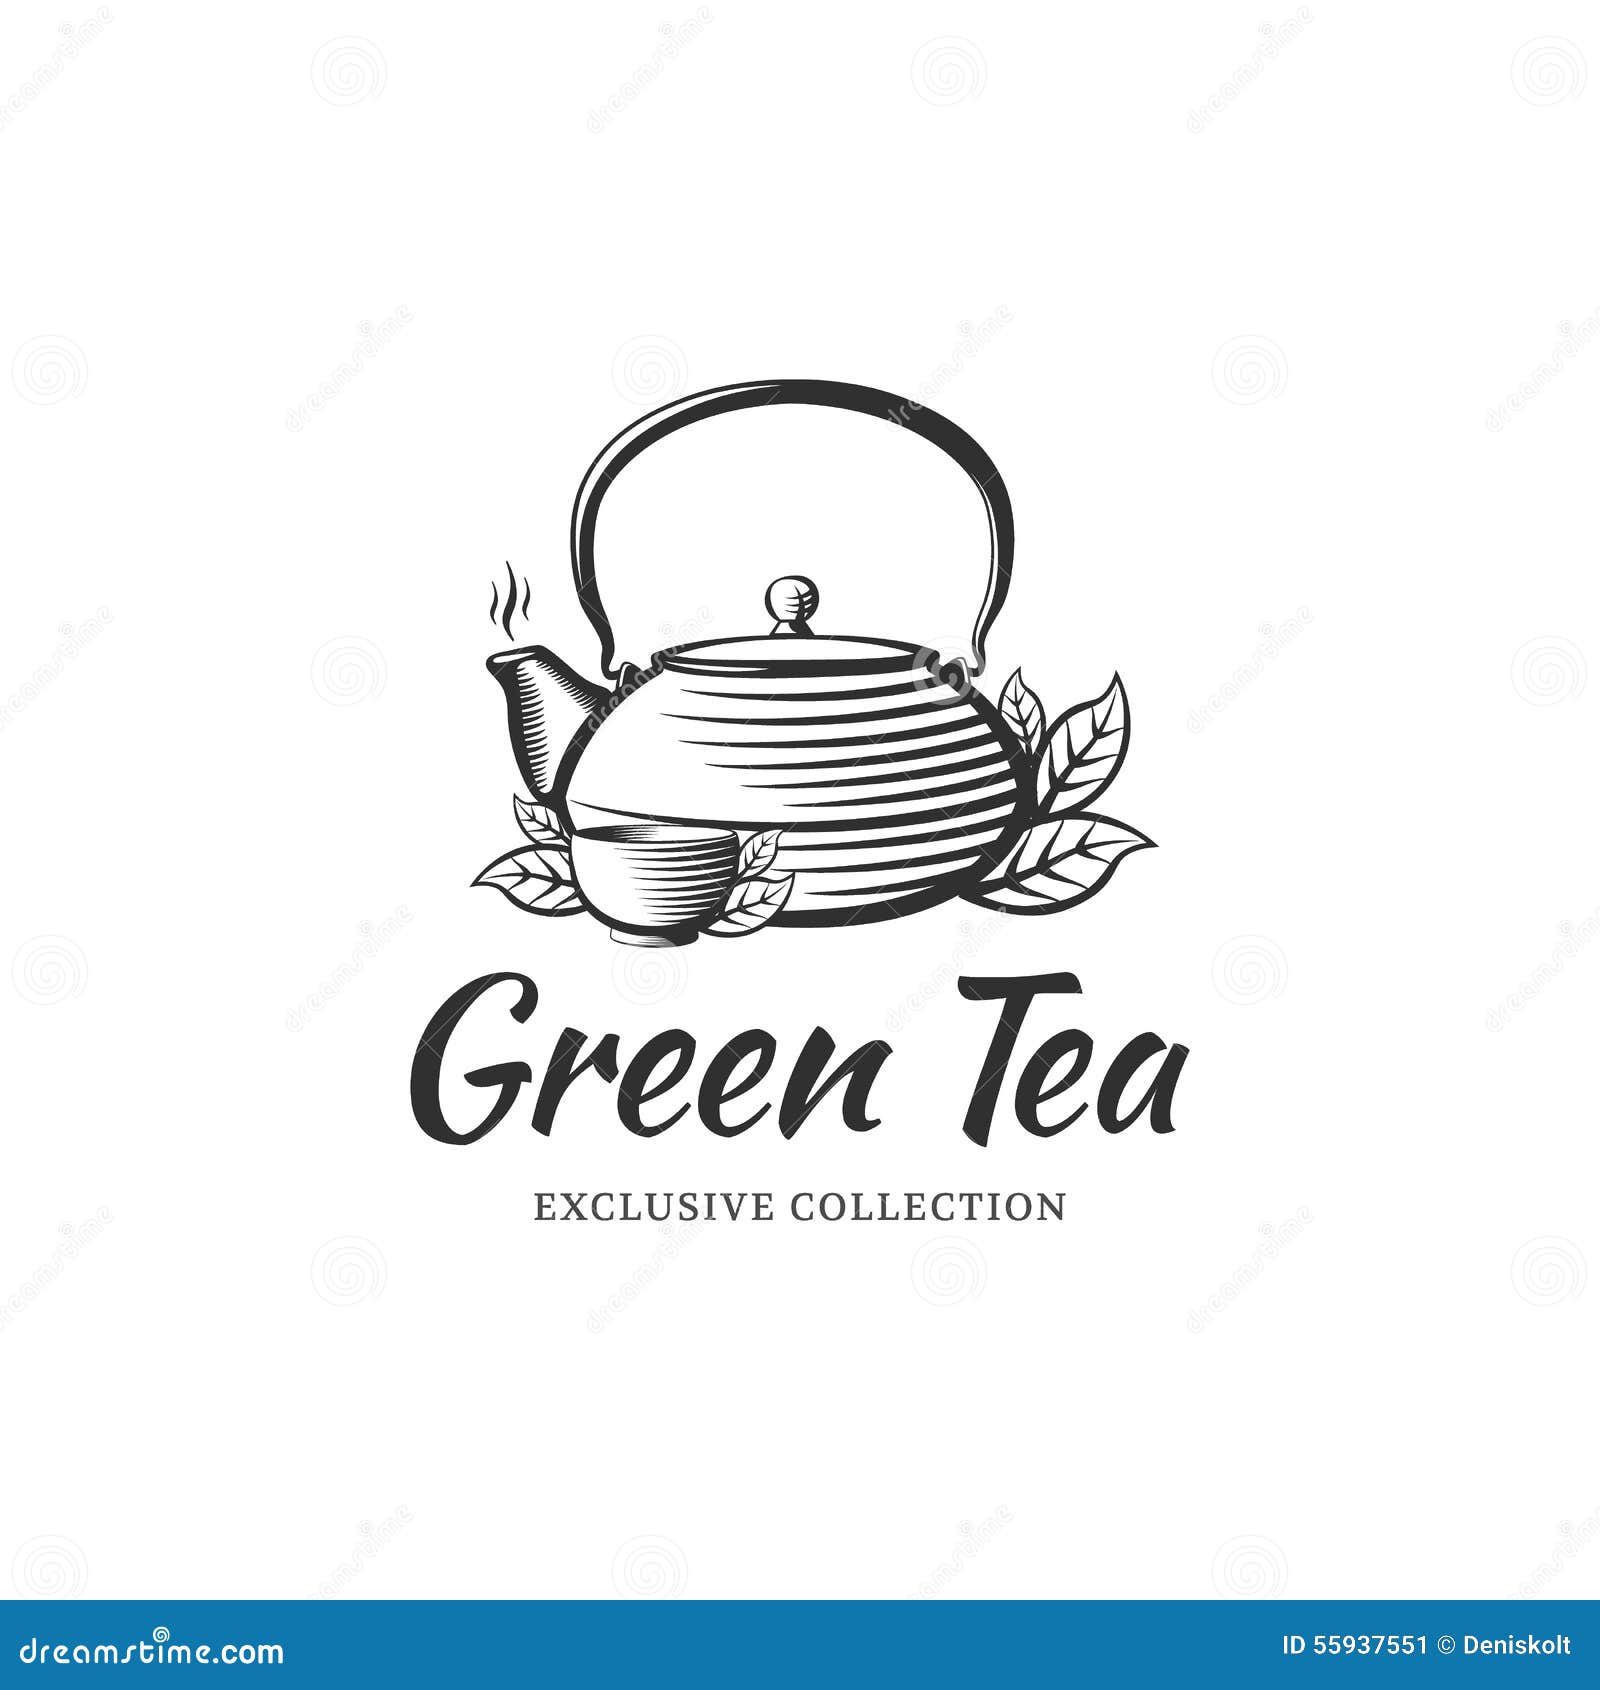  Tea Logo Stock Vector Image 55937551